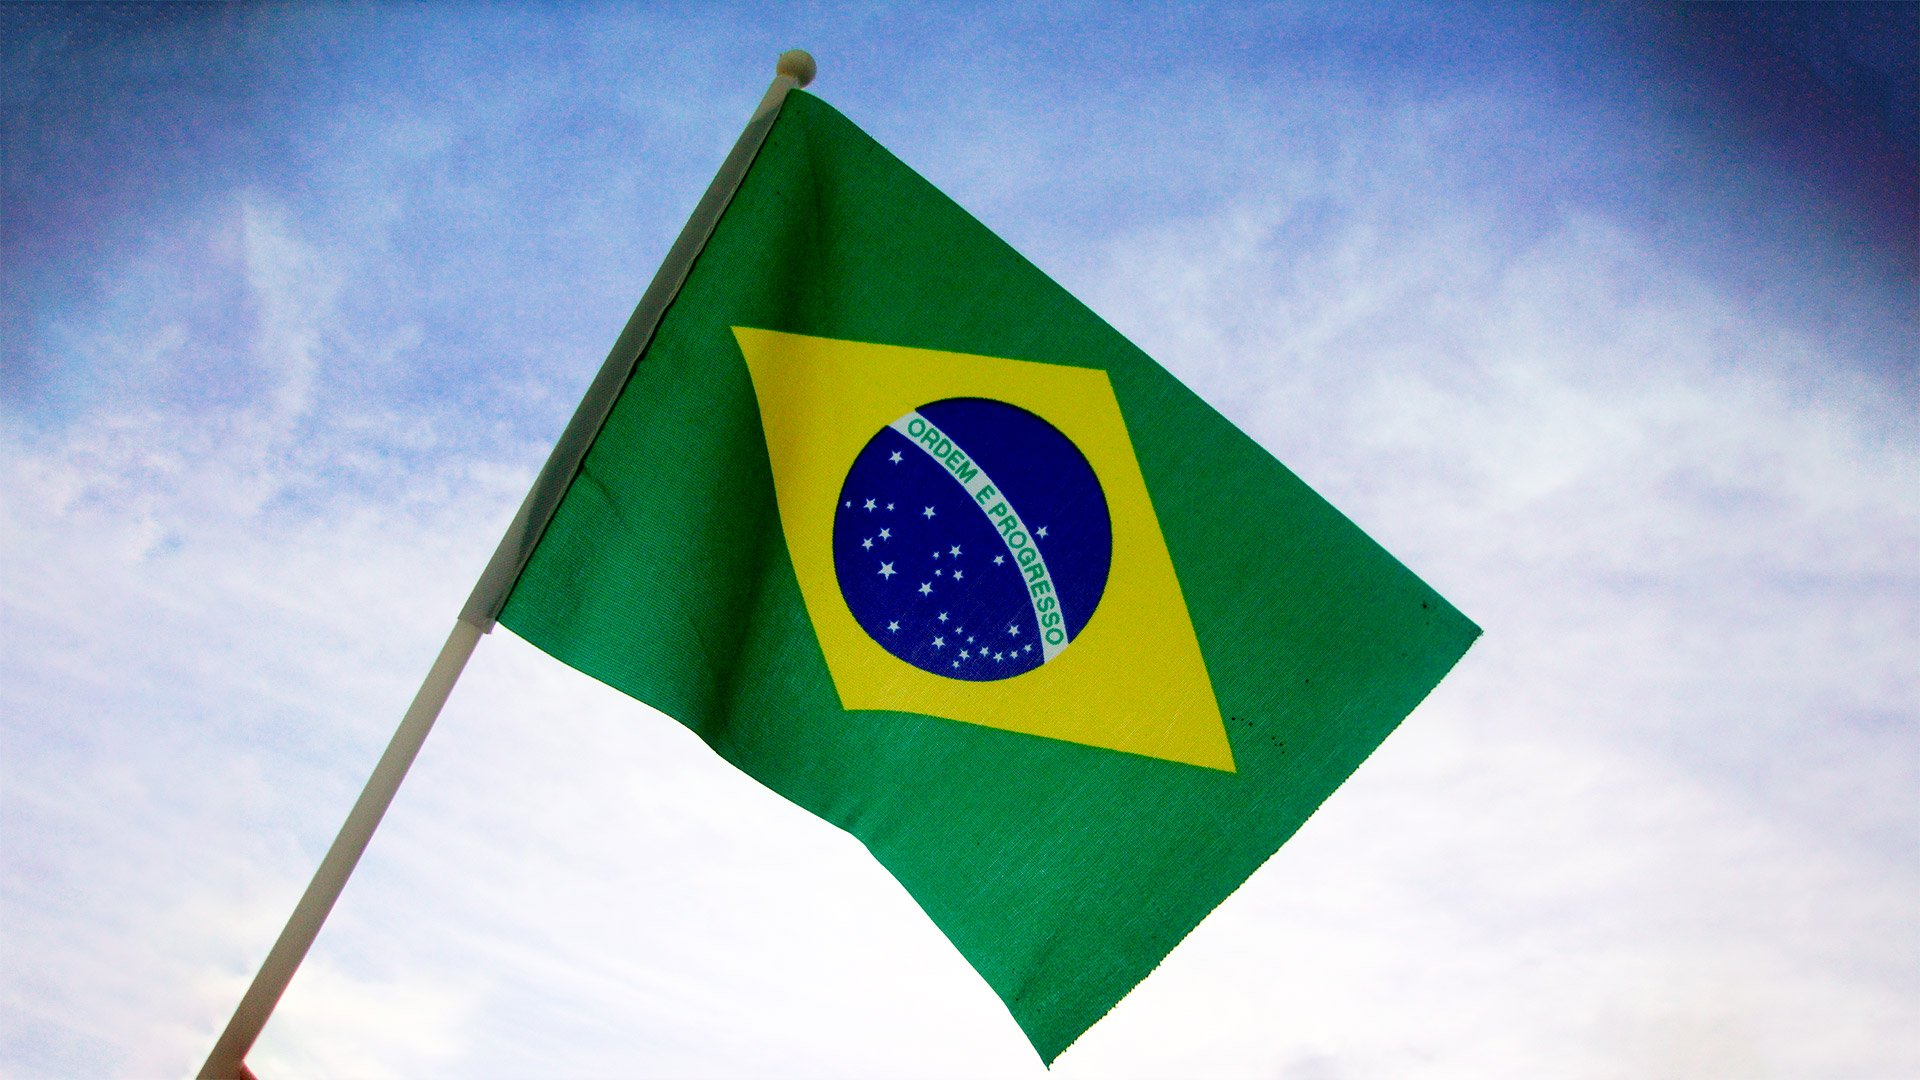 Magnho José no LinkedIn: Brasil é o 1º país do ranking mundial que